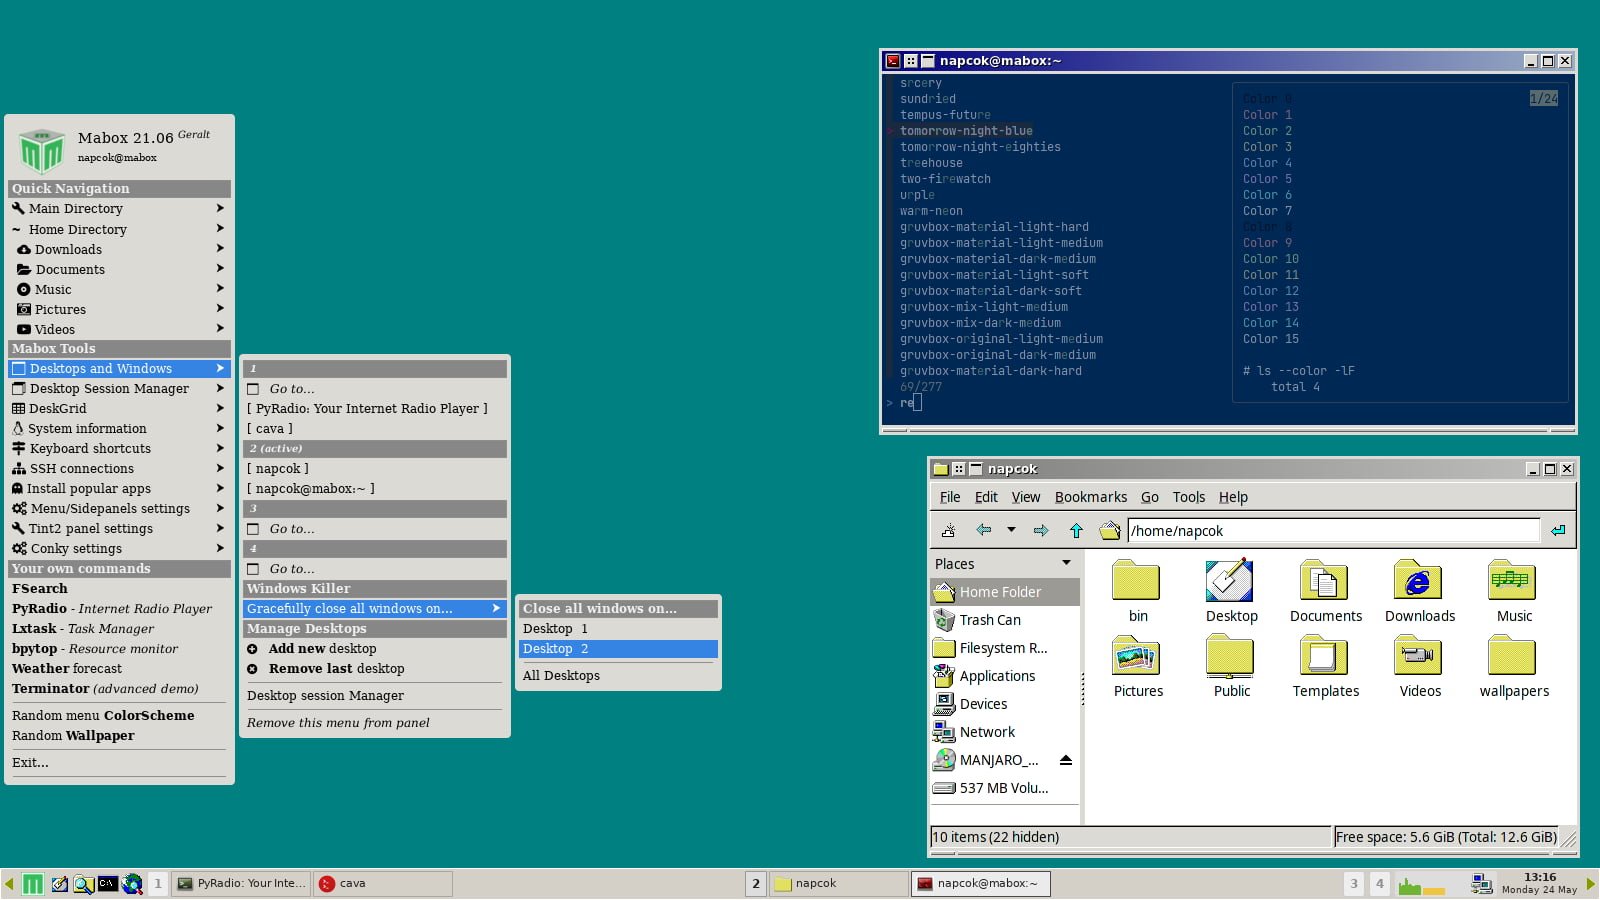 Pelando - Desktop App for Mac, Windows (PC), Linux - WebCatalog